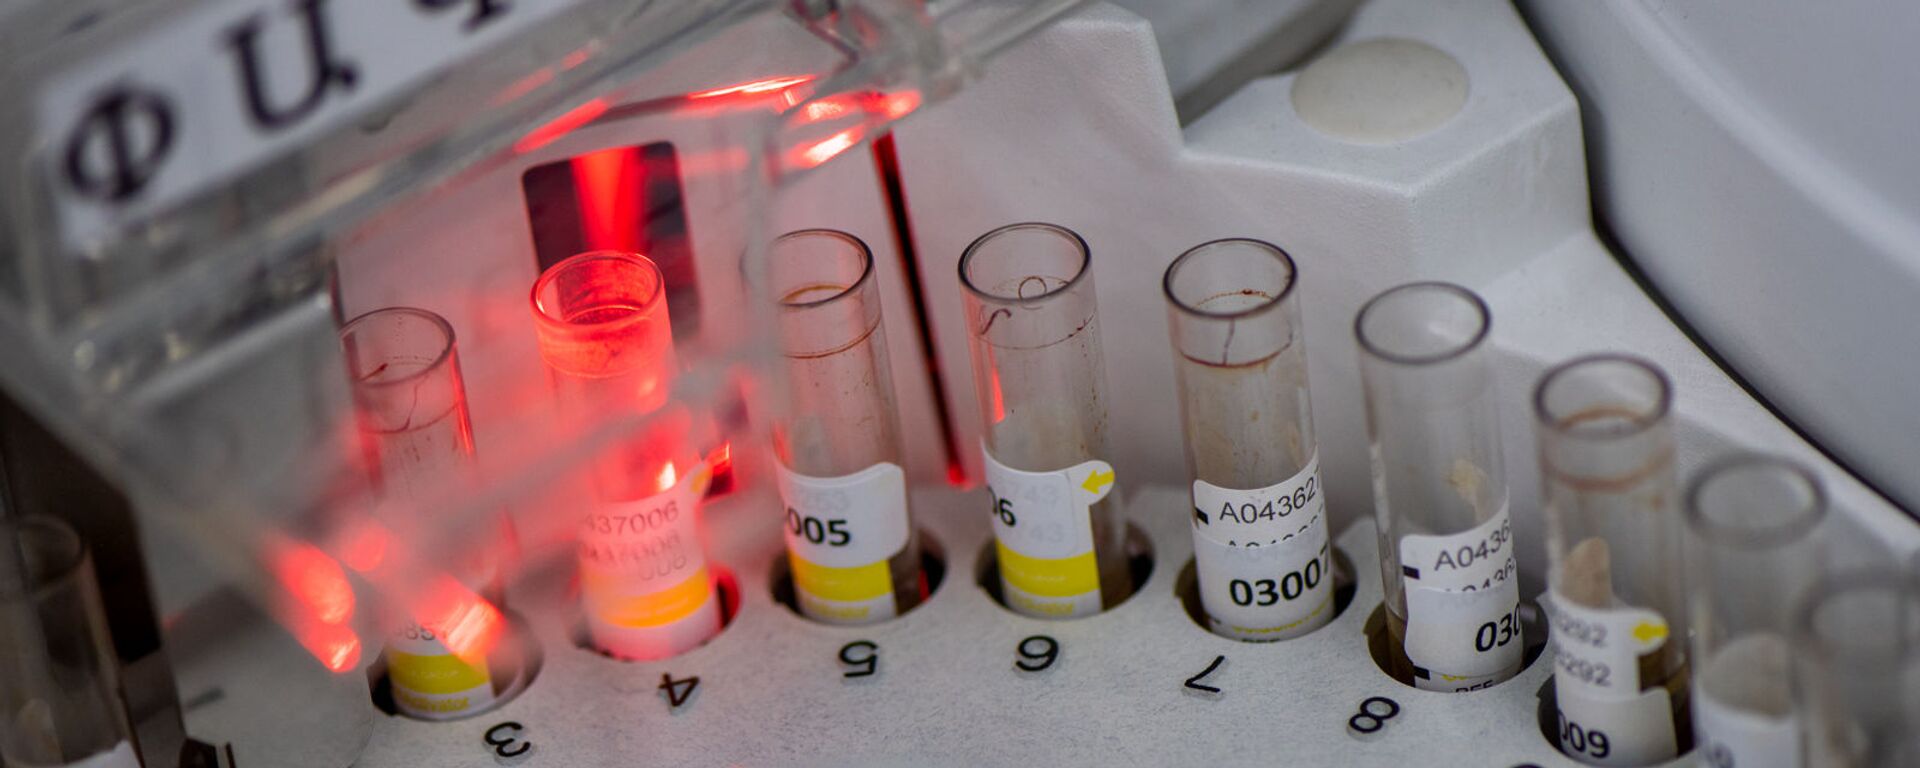 Лаборатория для проведения тестов на антитела к коронавирусу в Республиканском центре профилактики СПИДа - Sputnik Армения, 1920, 02.02.2021